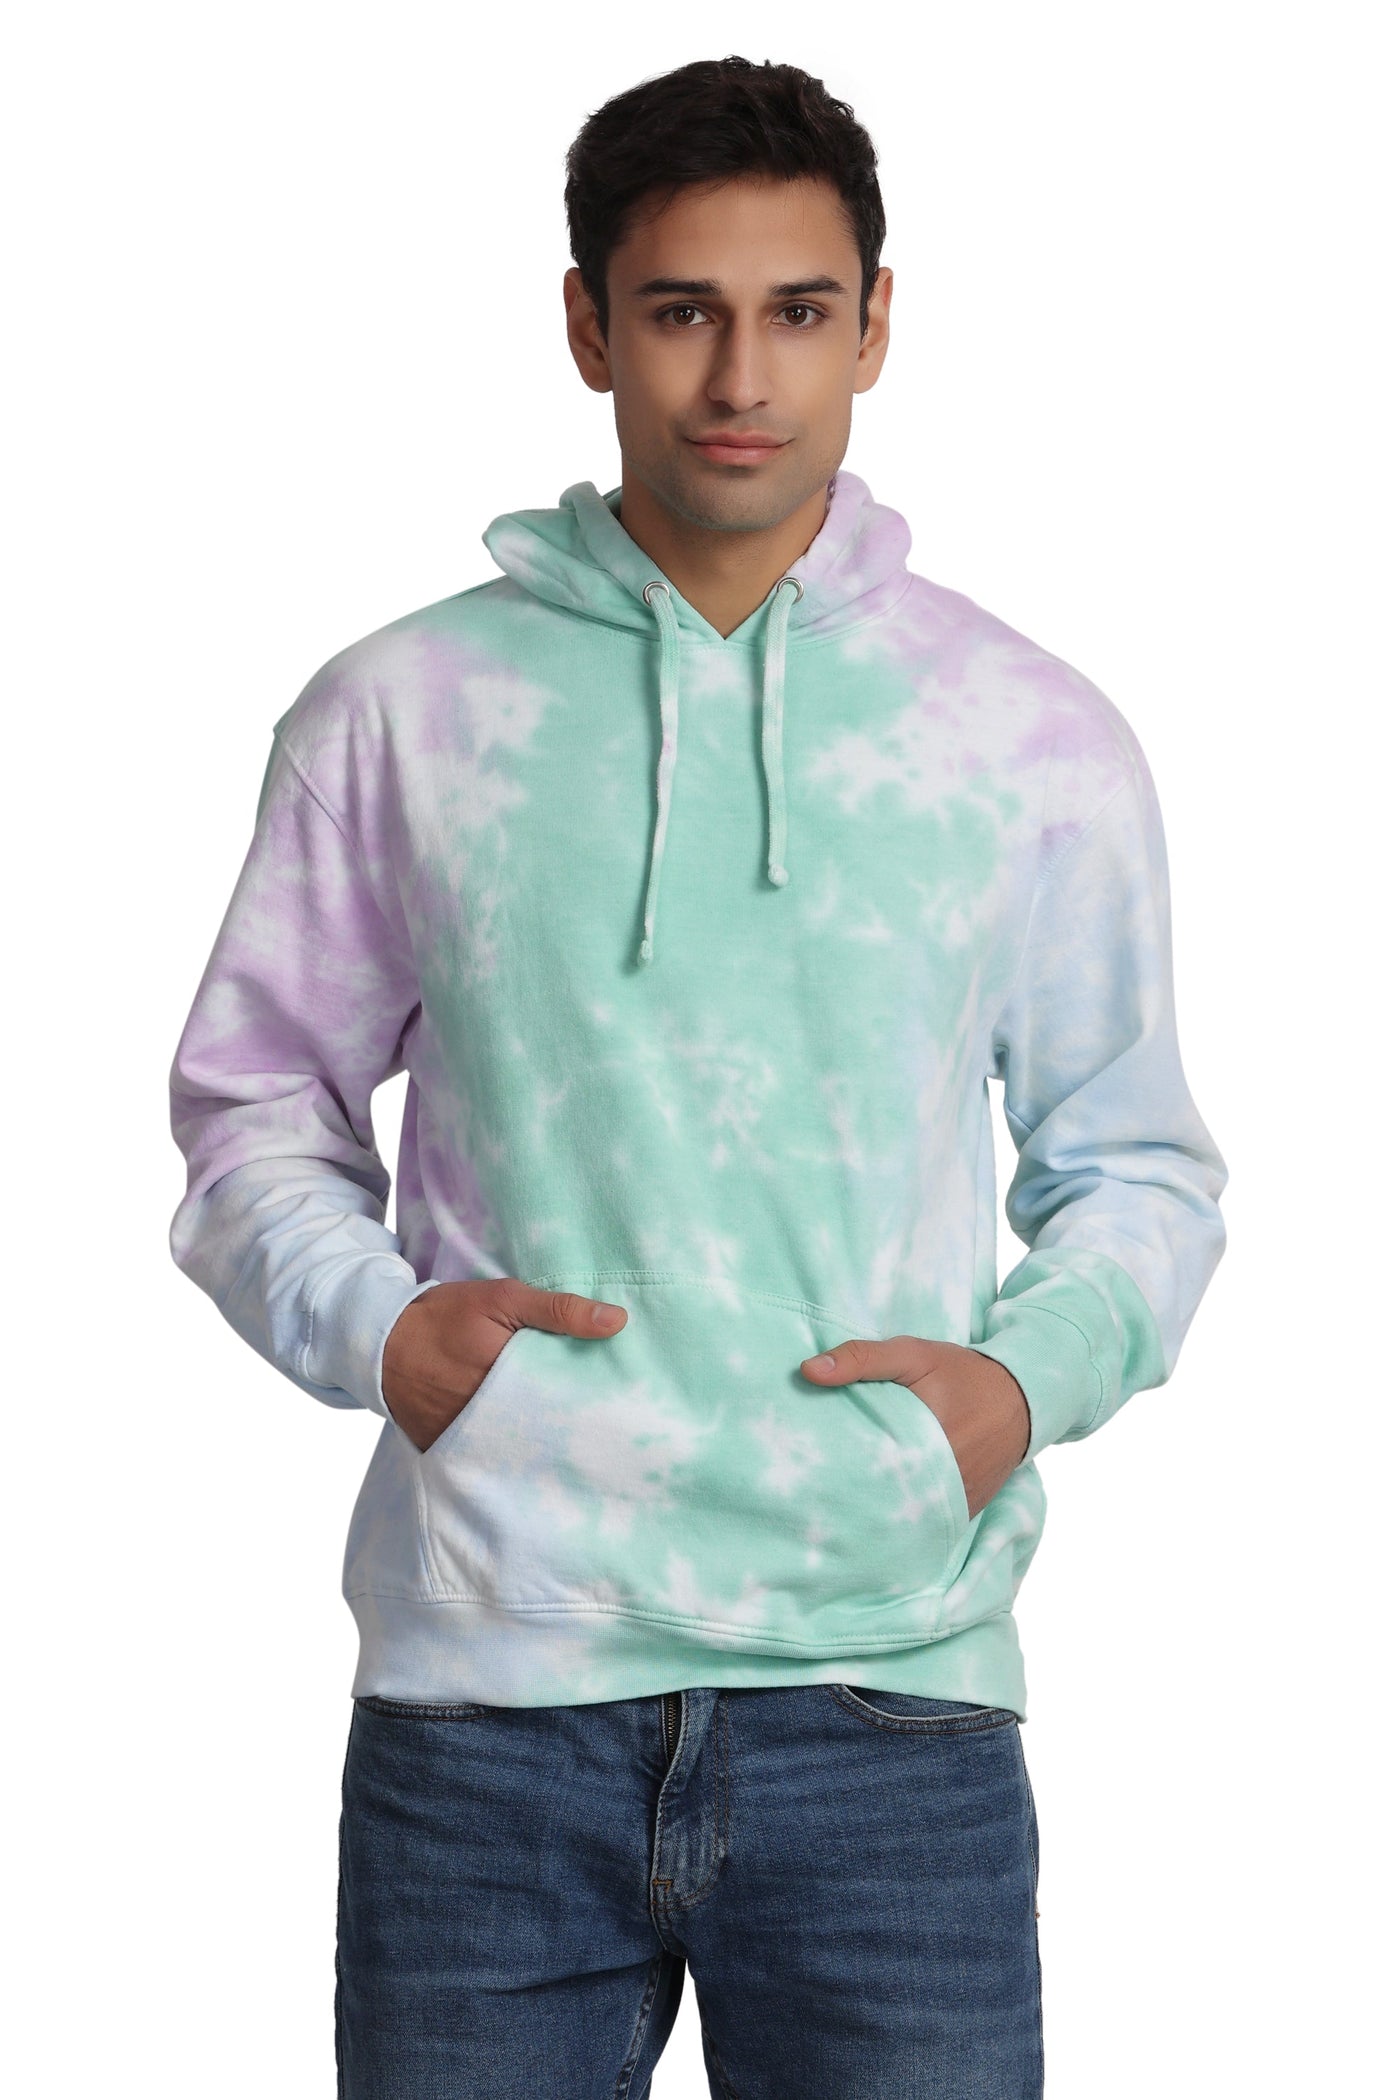 Unisex Tie Dye Pullover Hoodie Premium Cotton Blend Activewear H704